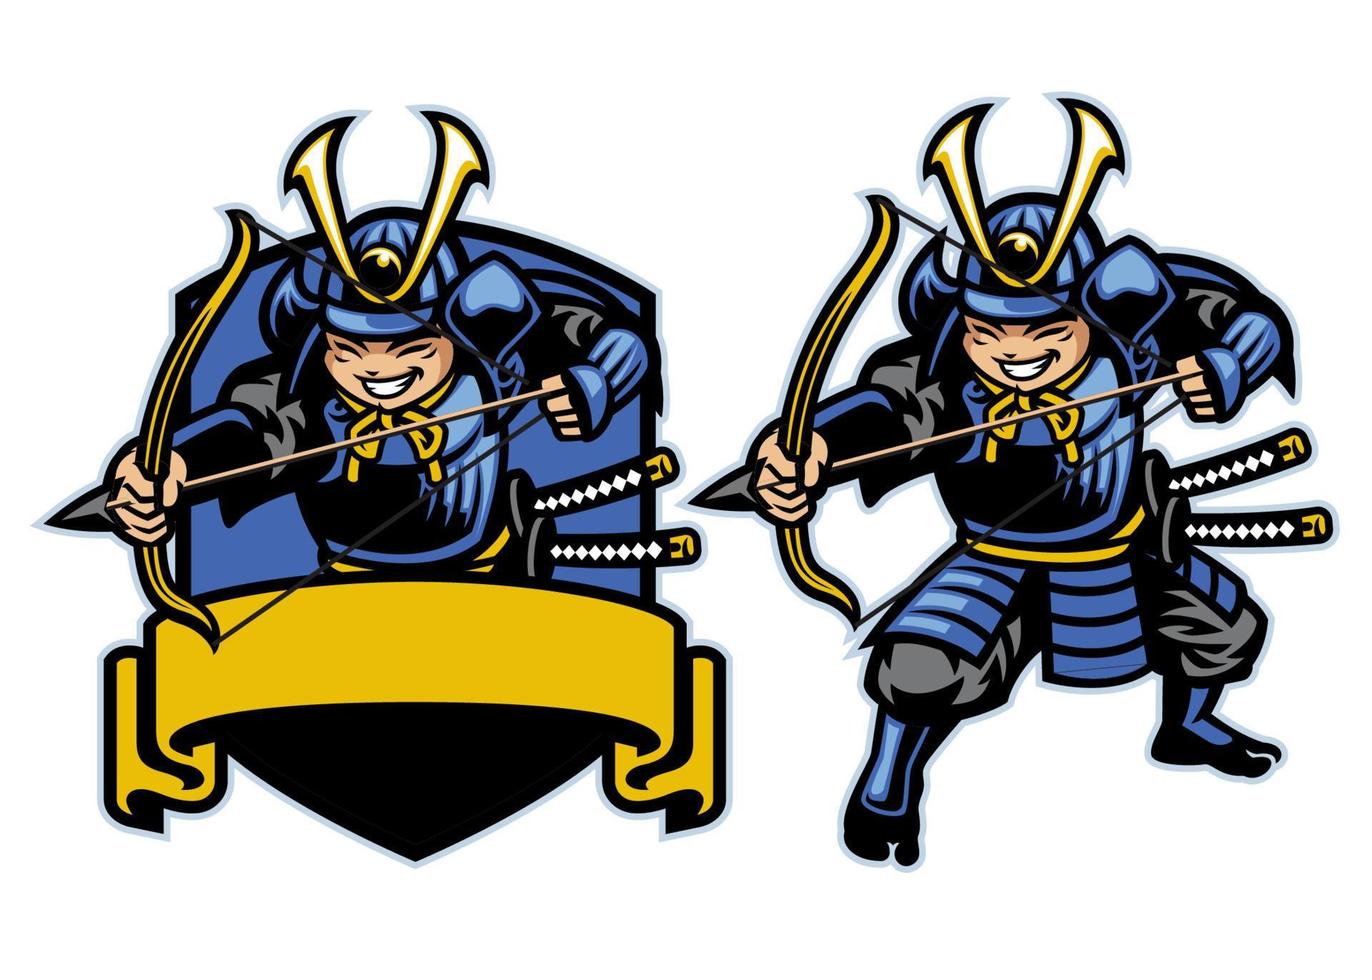 samouraï ronin guerrier archer mascotte ensemble vecteur